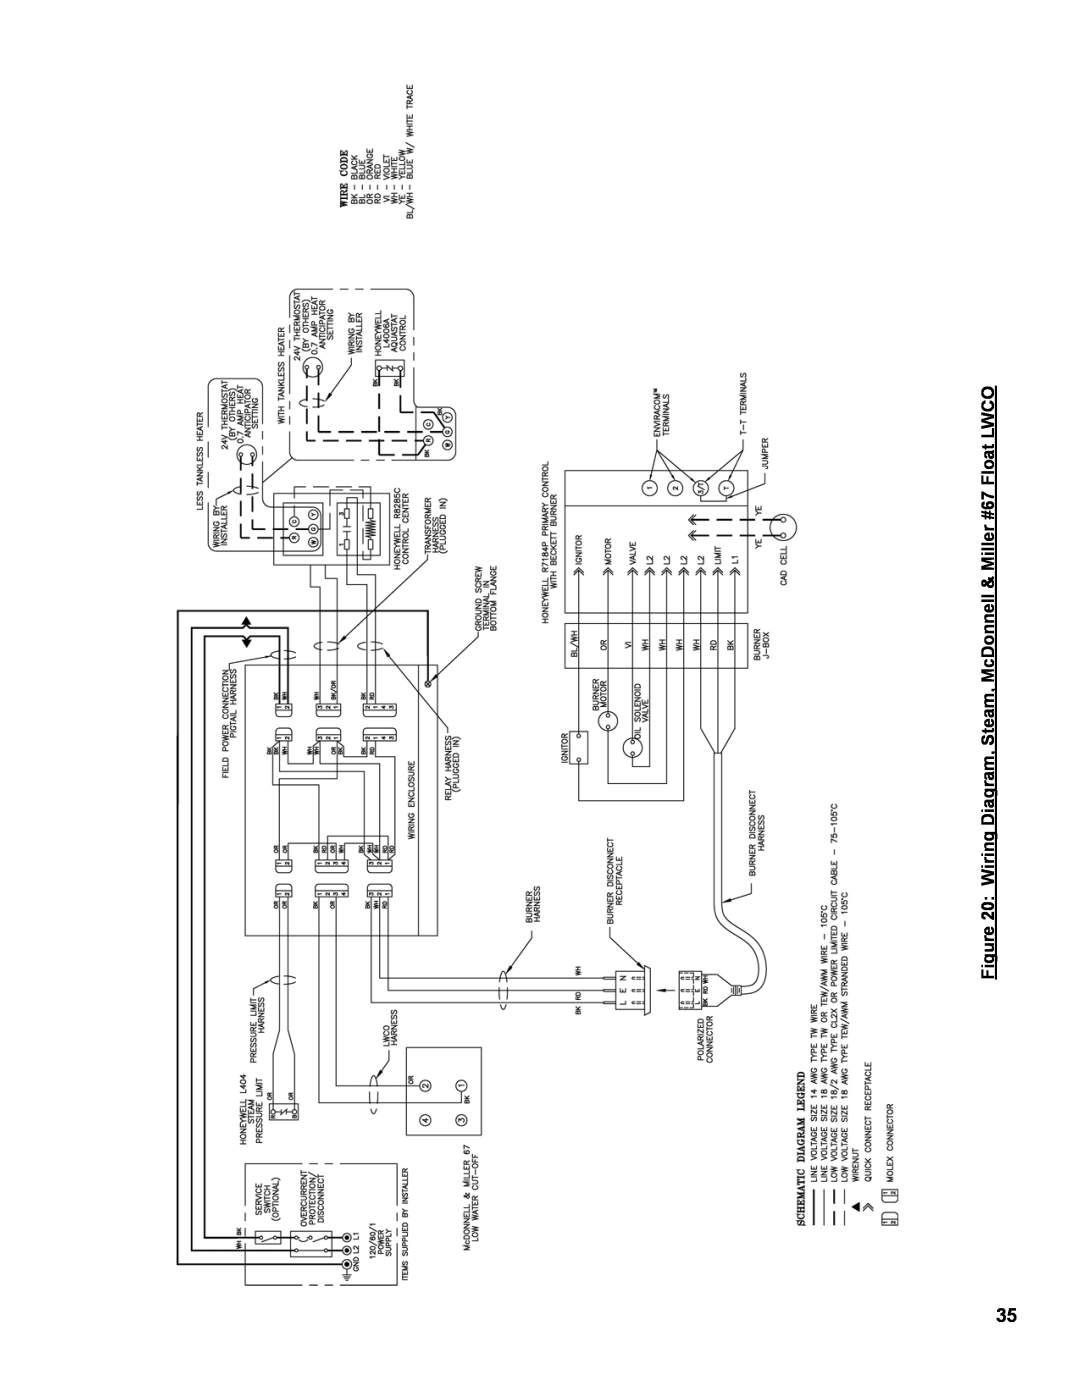 Burnham MST513, MST288, MST396, MST629 manual Wiring Diagram, Steam, McDonnell & Miller #67 Float LWCO 